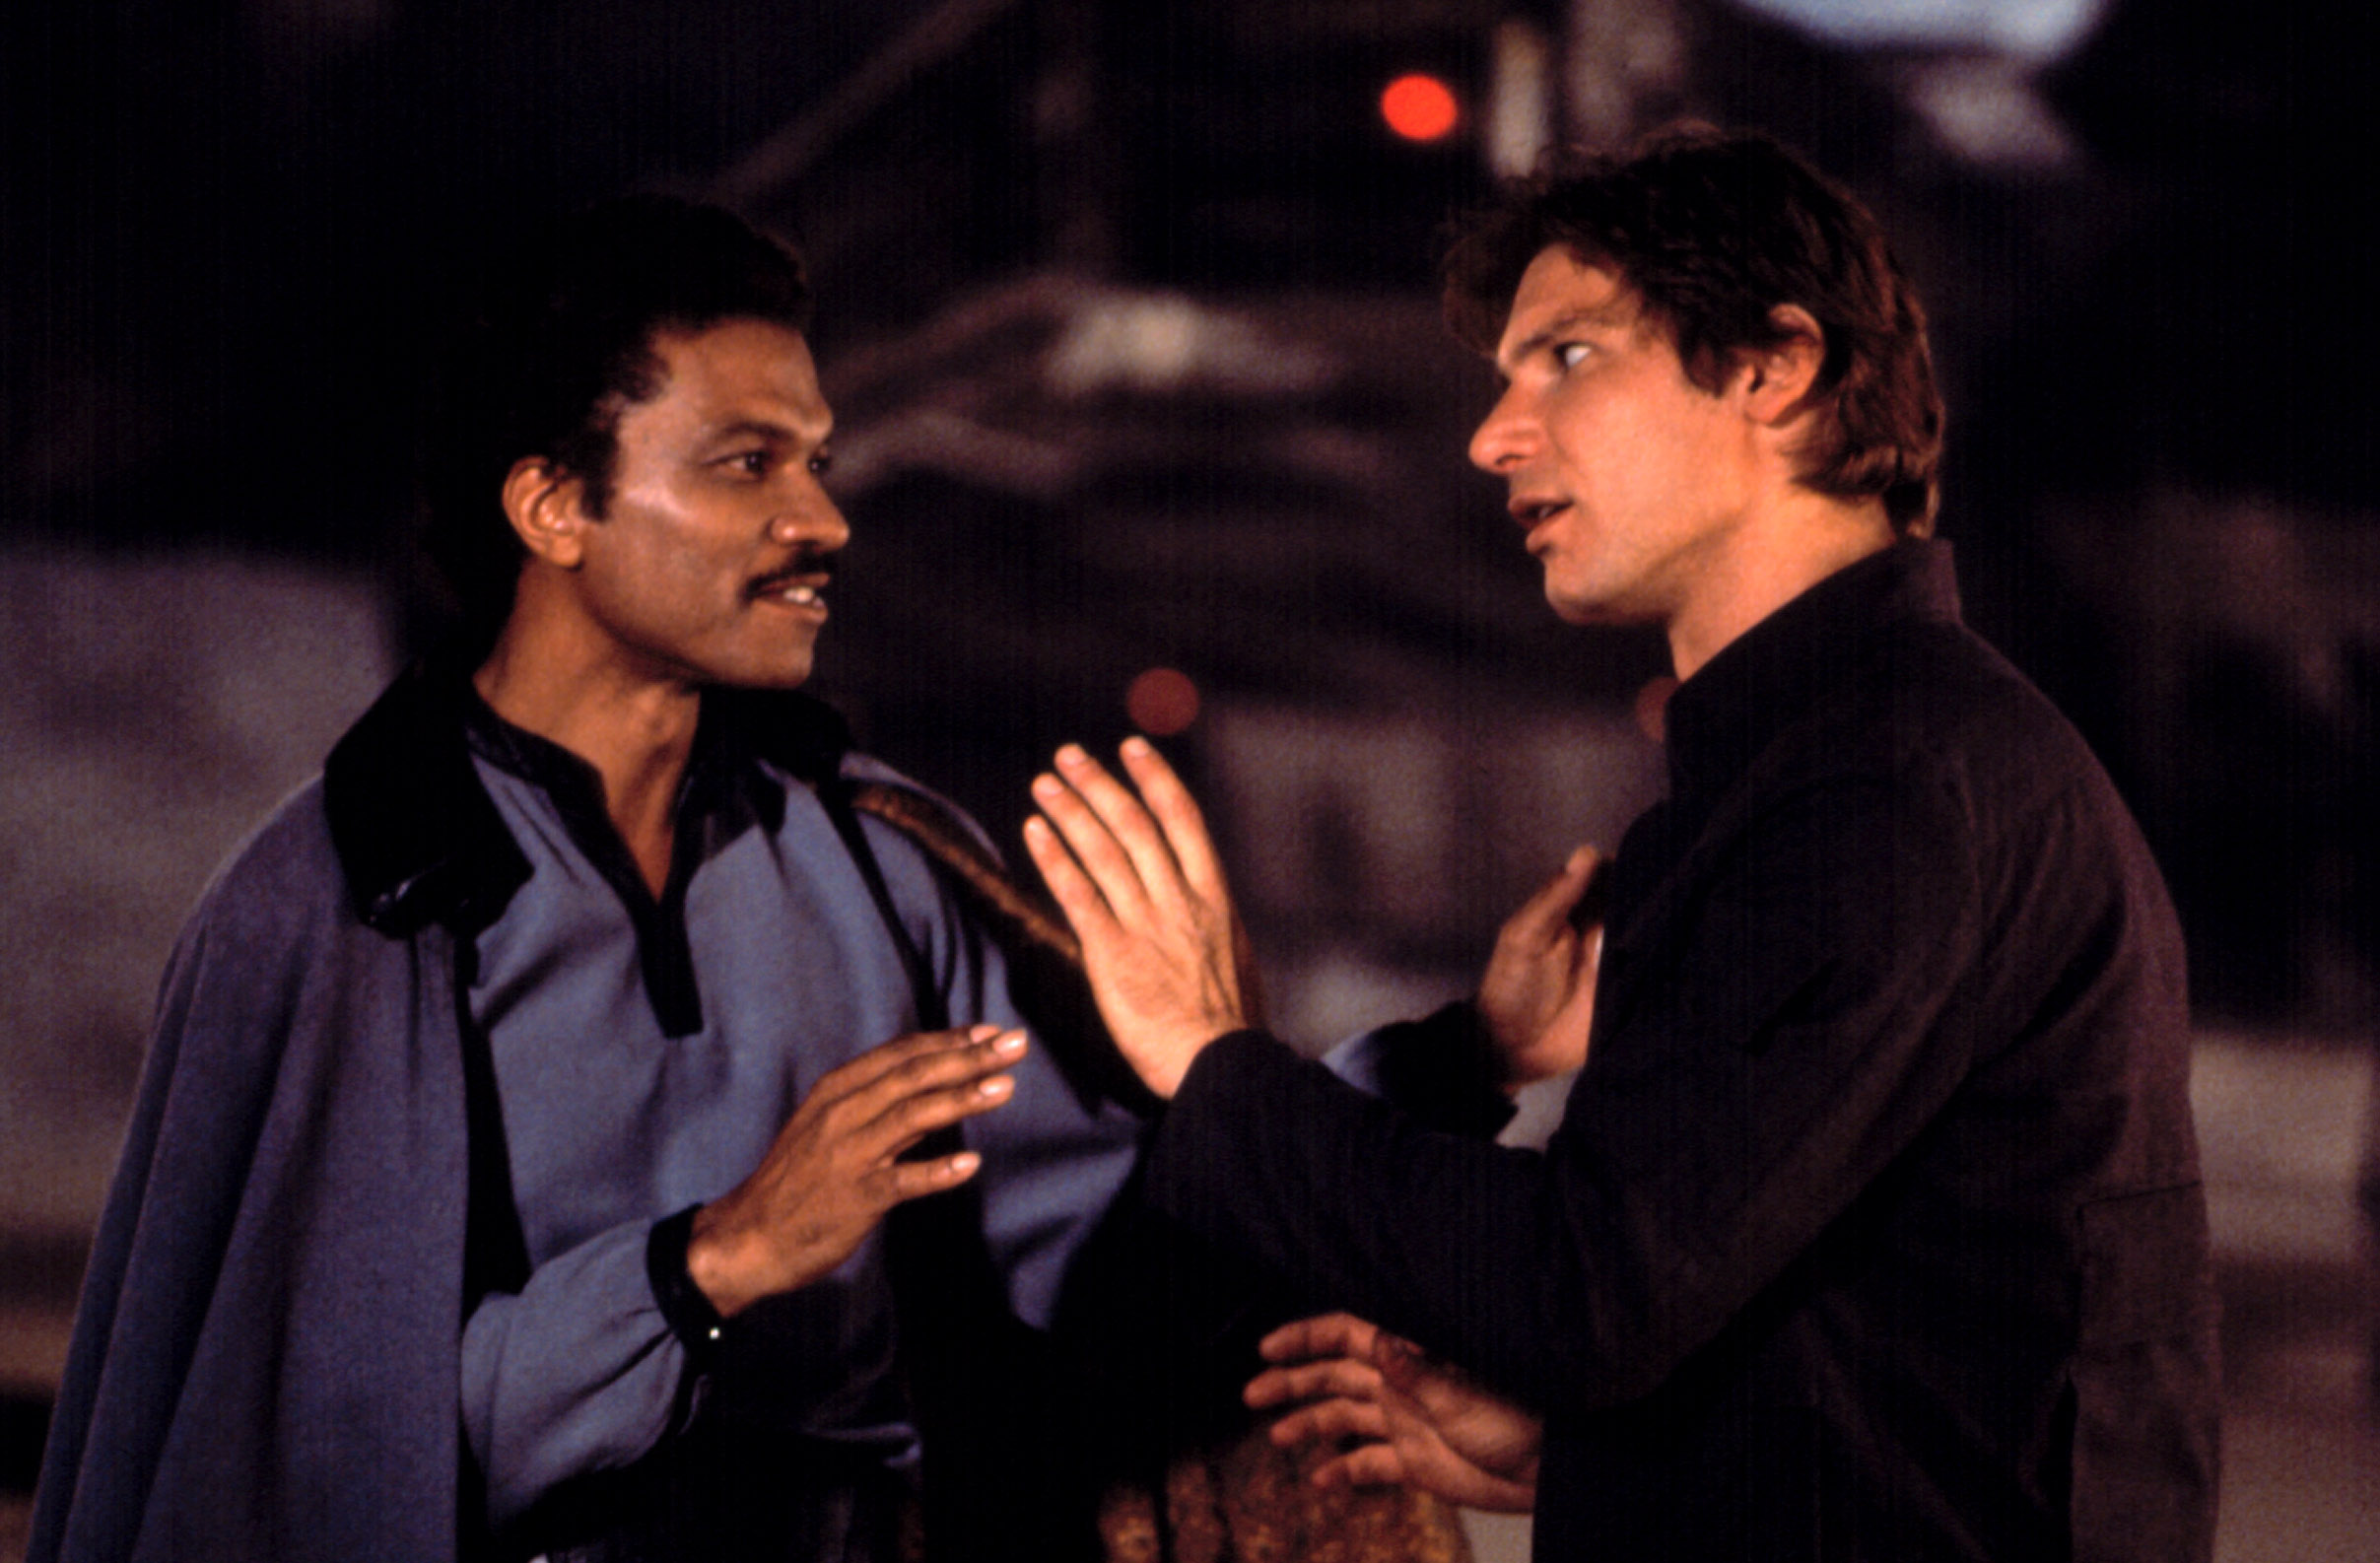 Billy Dee Williams, dans le rôle de Lando Calrissian, discute avec Harrison Ford, dans le rôle de Han Solo, dans "L